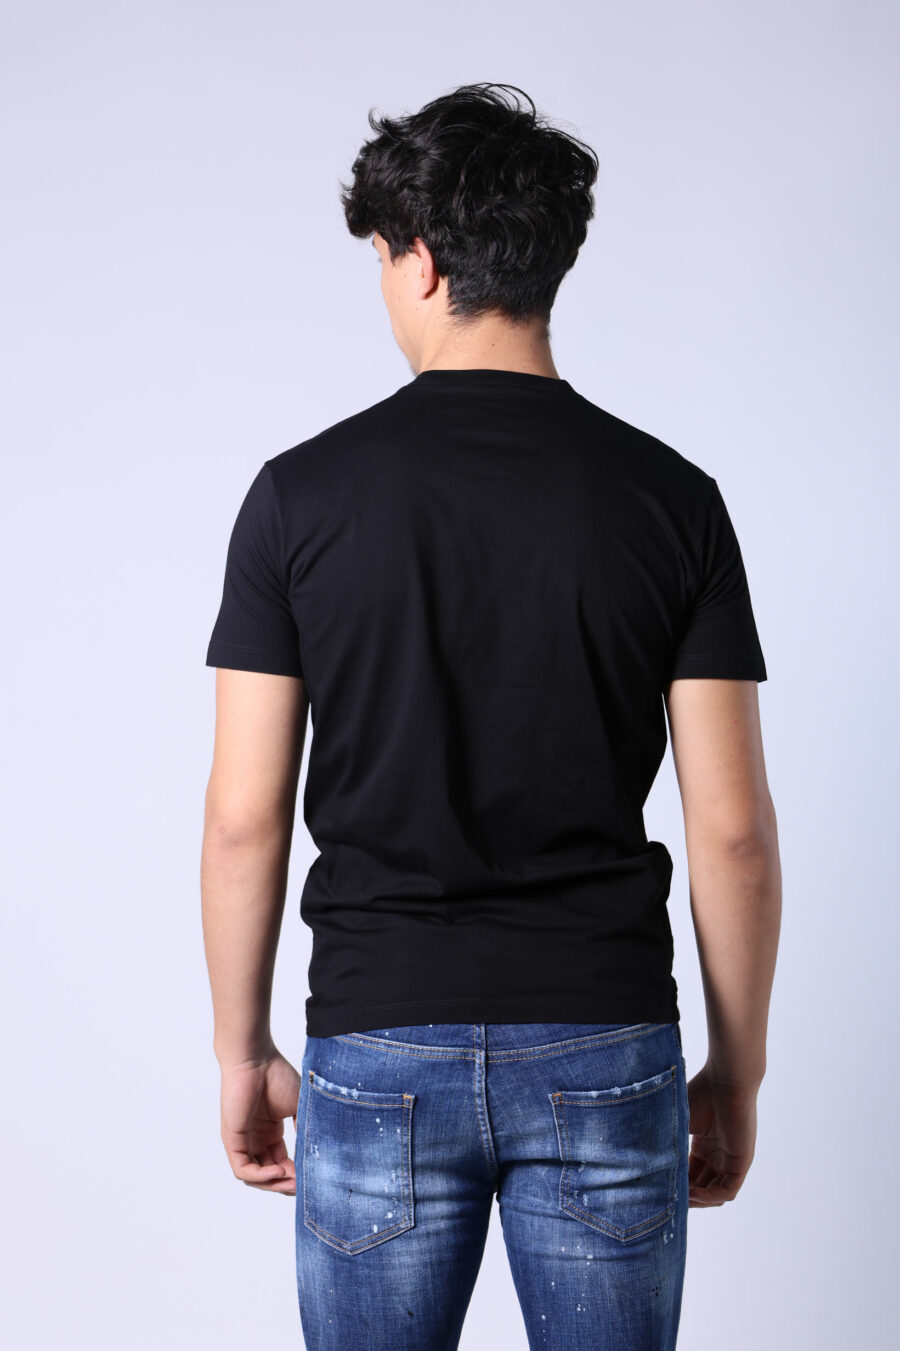 Camiseta negra con maxilogo "icon pixeled" turquesa y fucsia - Untitled Catalog 05300